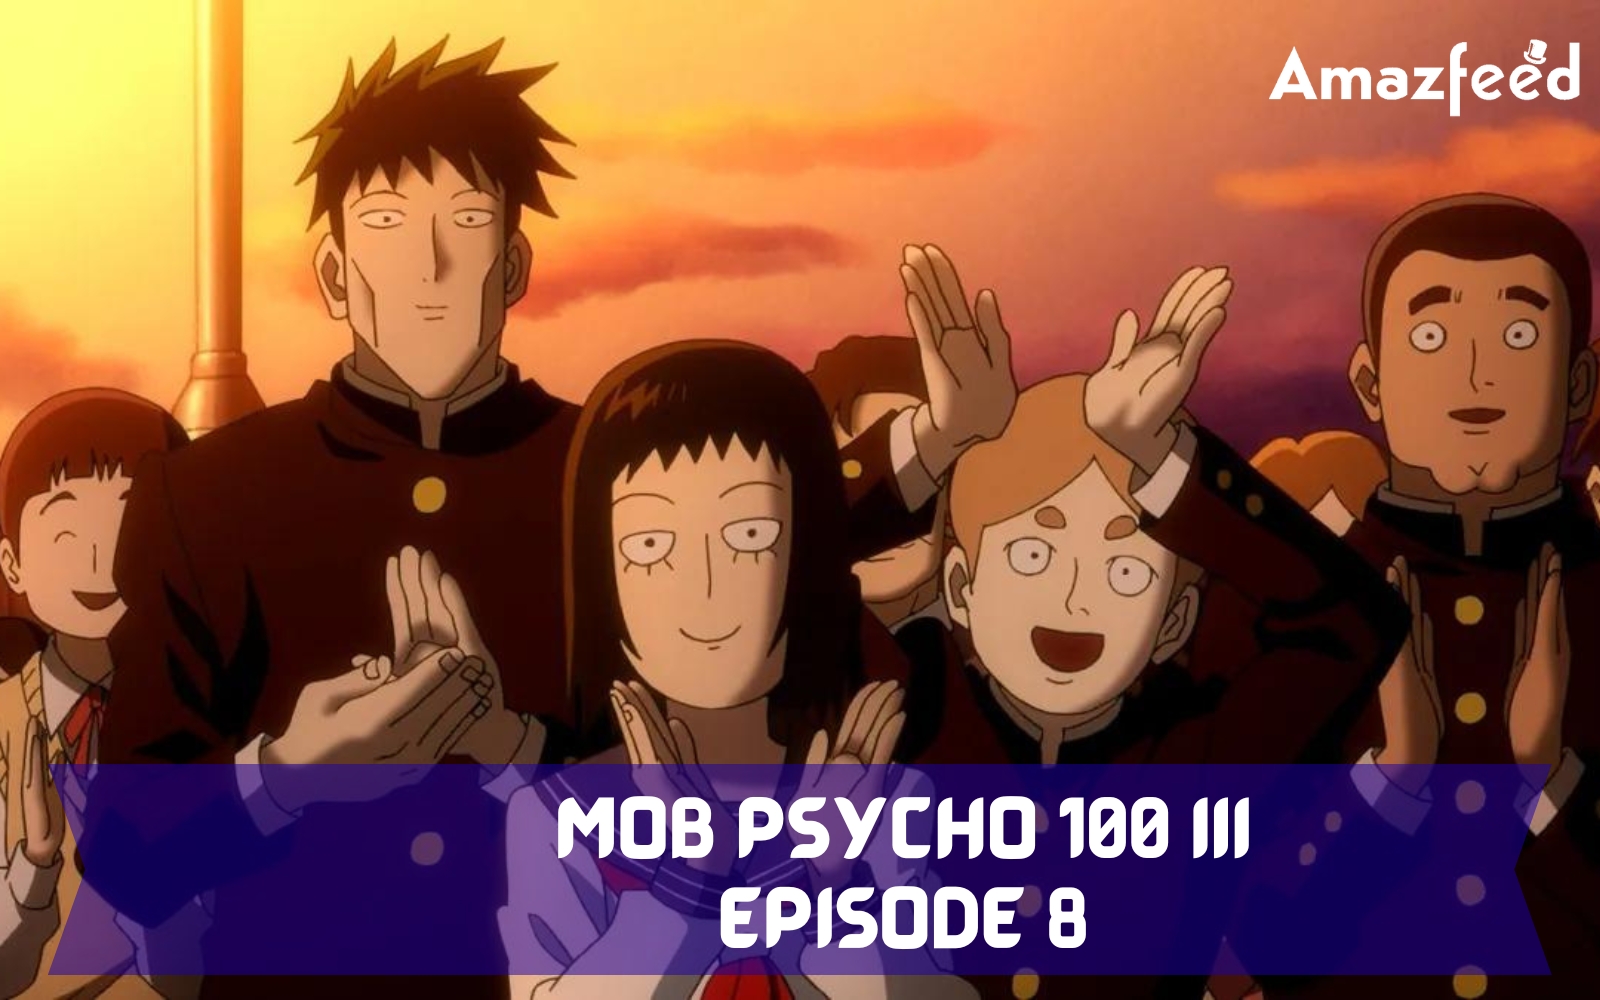 Mob Psycho 100 III Episode 8 Review - Telepathy